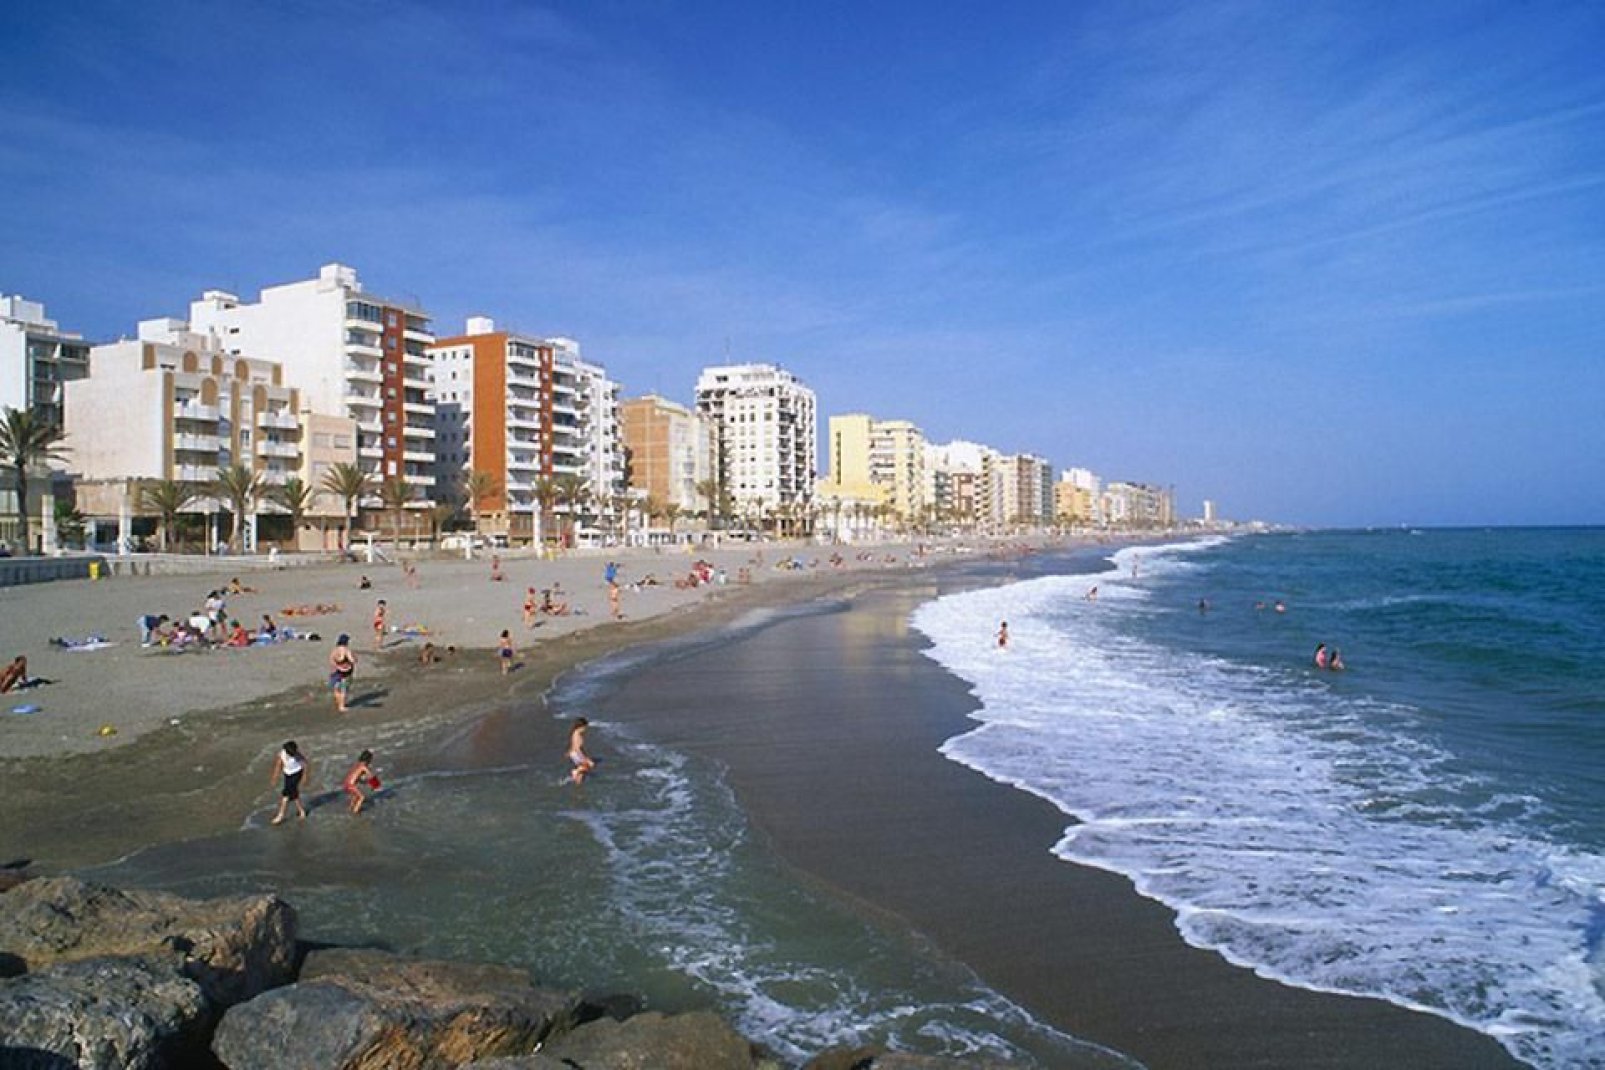 Almería ist für schöne feinkörnige Sandstrände bekannt. Hier befindet sich ebenfalls der größte FKK-Strand Europas.